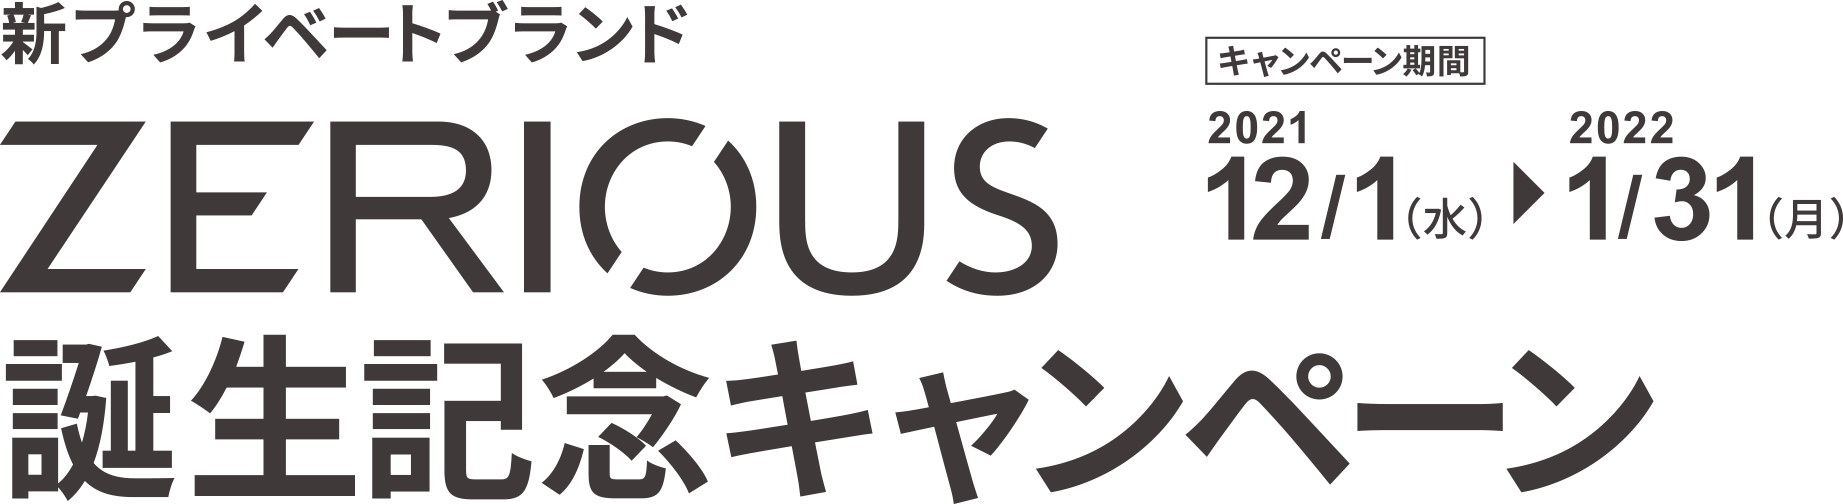 新プライベートブランド「ZERIOUS」誕生記念キャンペーン